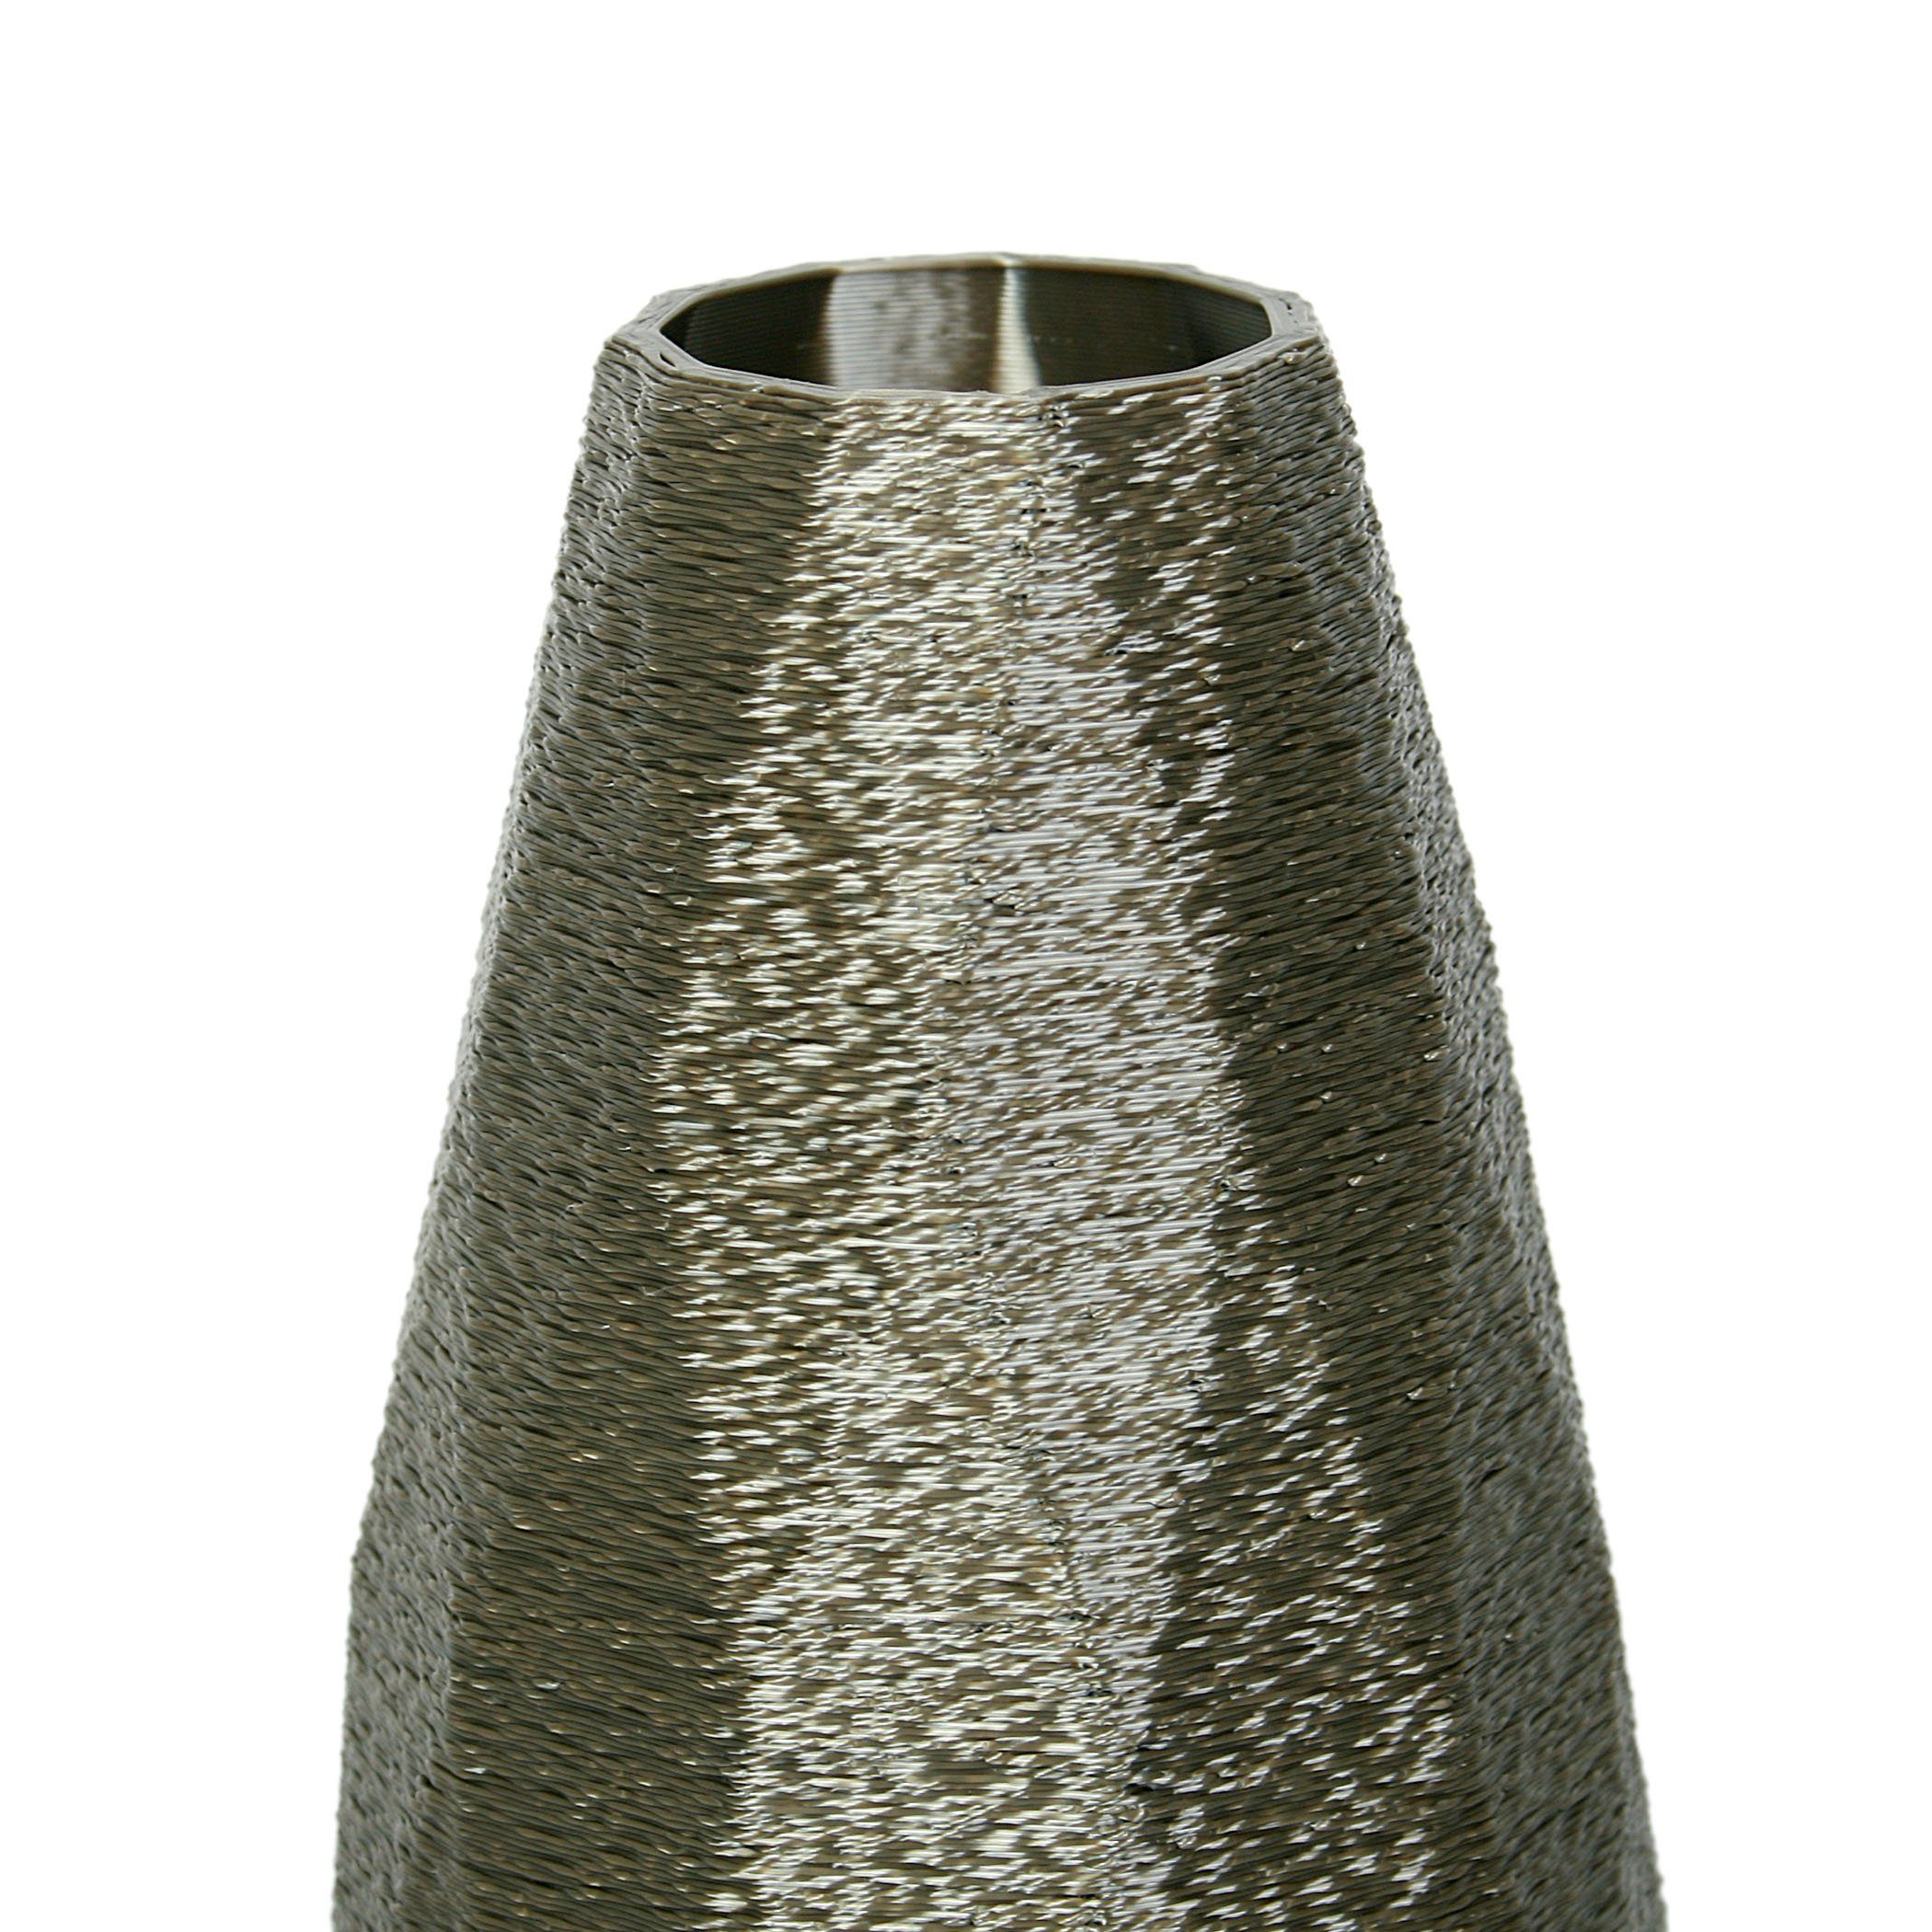 aus aus bruchsicher – Designer Bio-Kunststoff, Dekorative Feder Old Vase wasserdicht & Kreative Copper Rohstoffen; nachwachsenden Blumenvase Dekovase